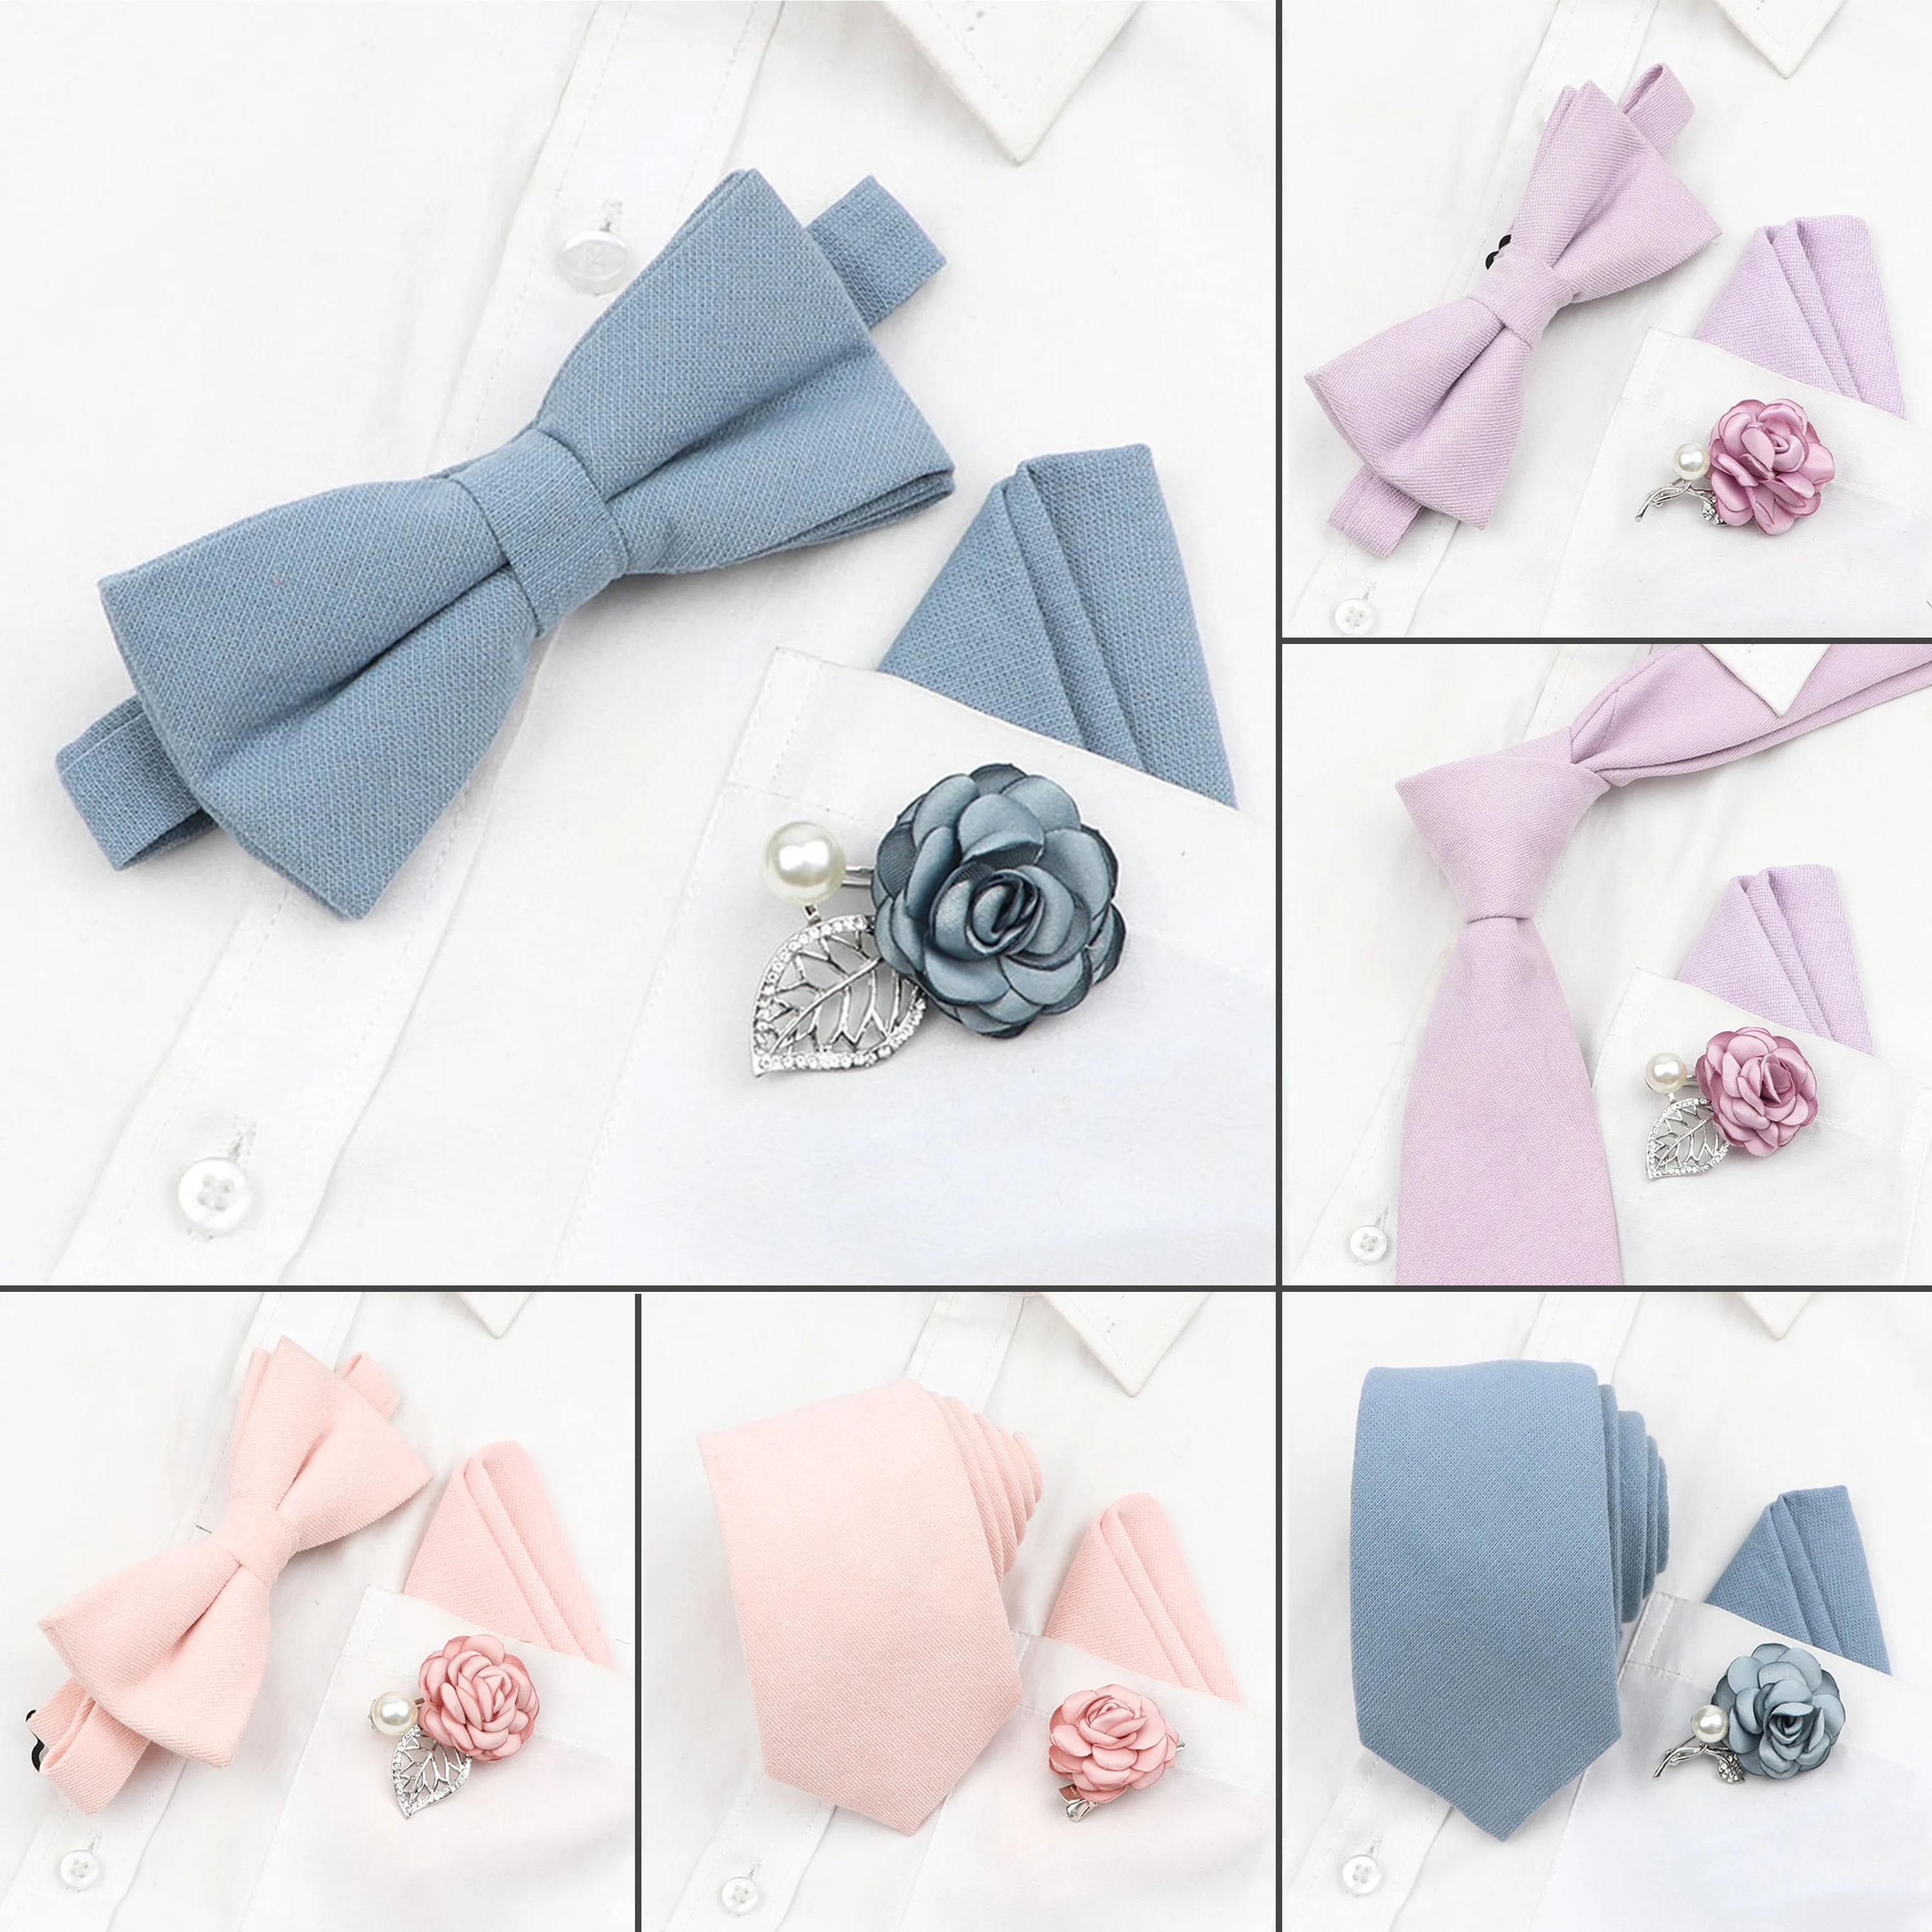 Corbata de algodón de 7cm para el novio, hermoso conjunto de pajarita de Color sólido, Rosa melocotón, azul, tela artística, broche de flores, regalo de boda